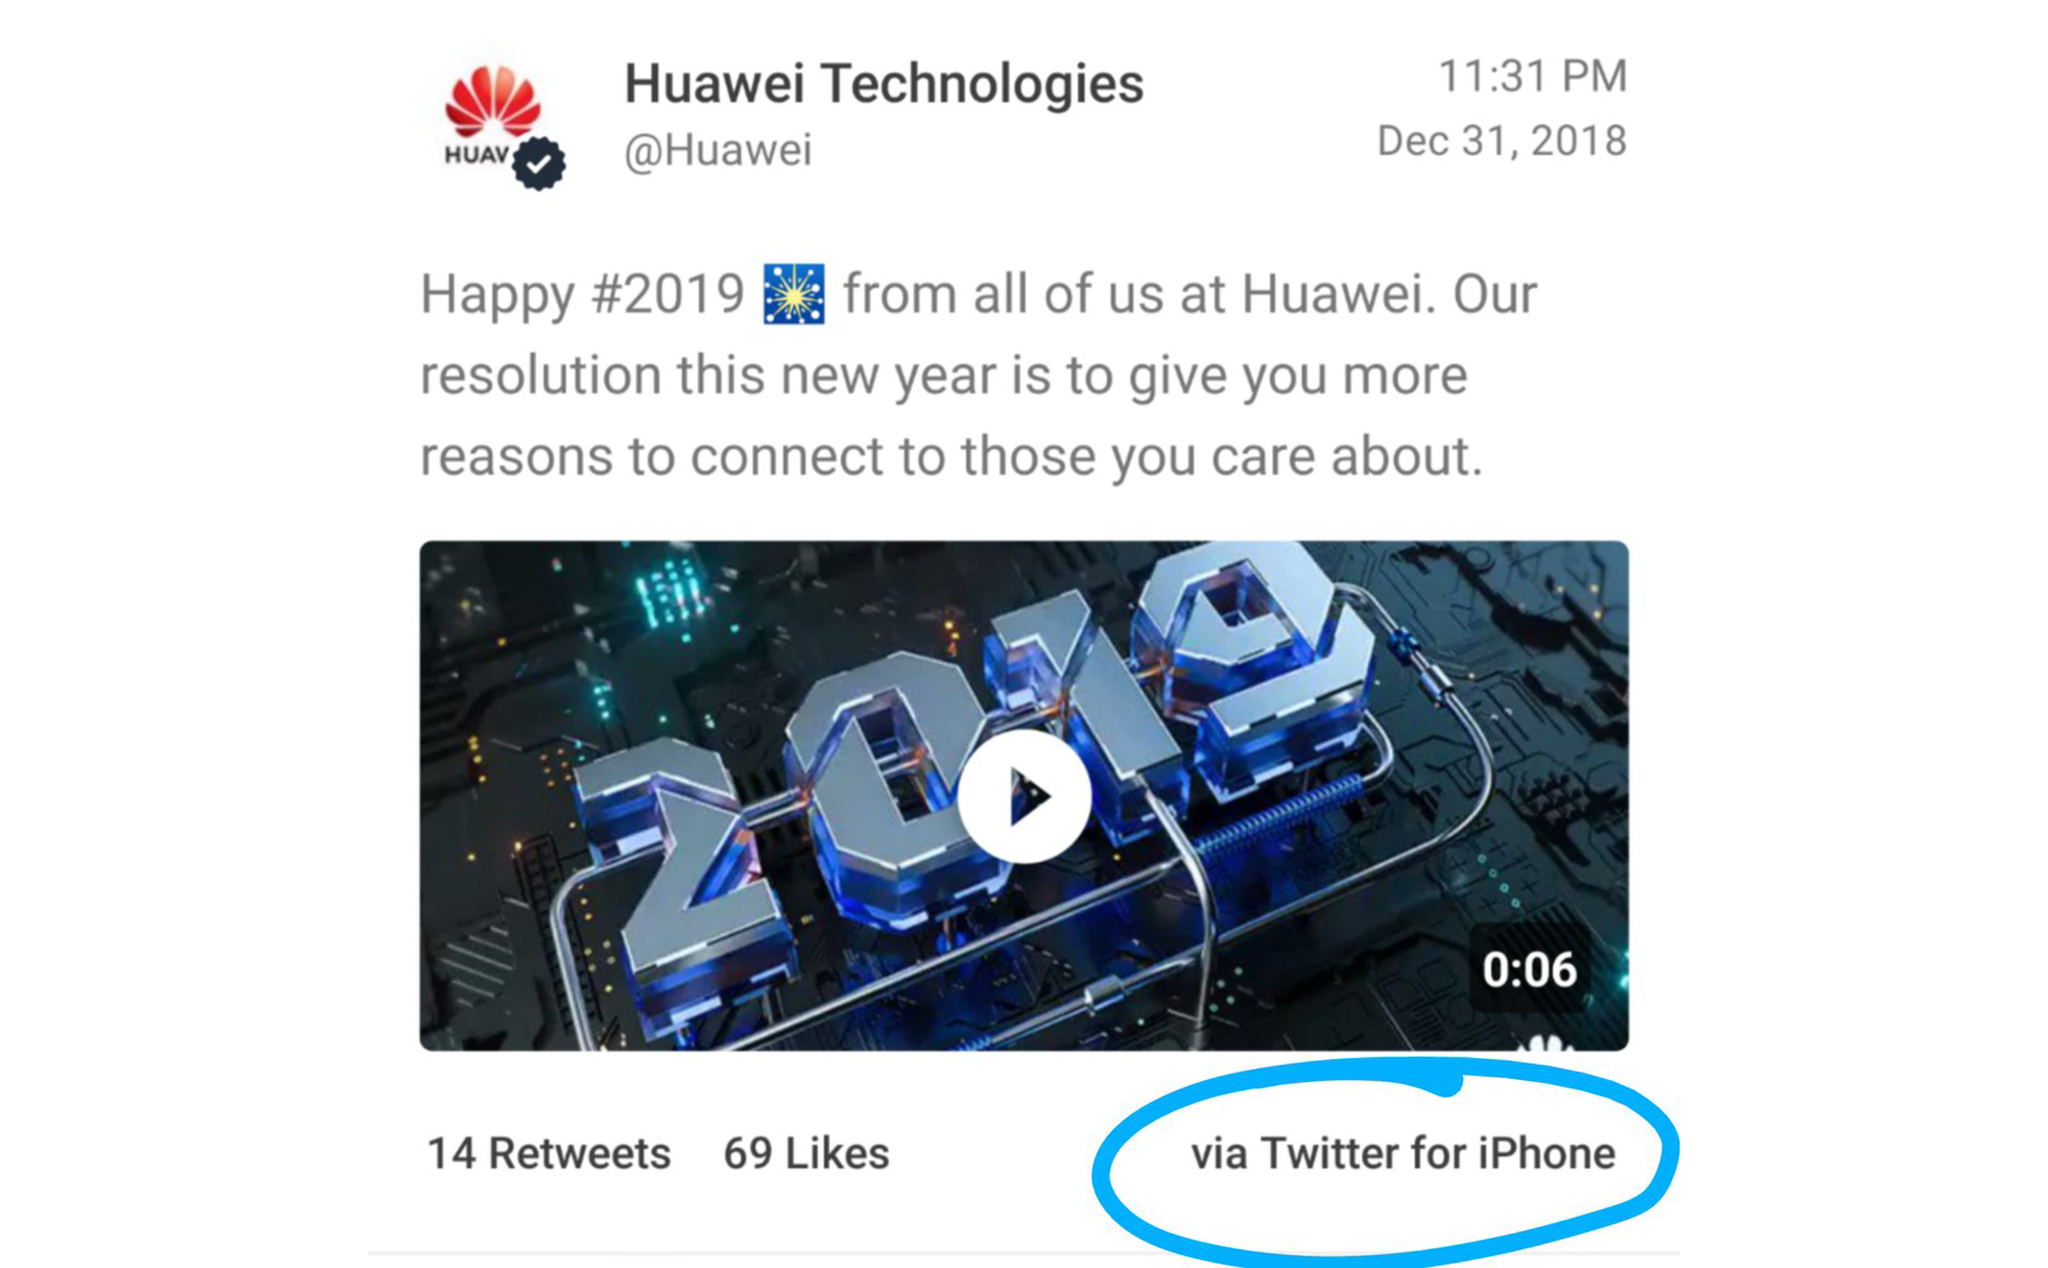 Huawei giáng chức và cắt giảm lương của những nhân viên liên quan đến việc đăng Tweet bằng iPhone